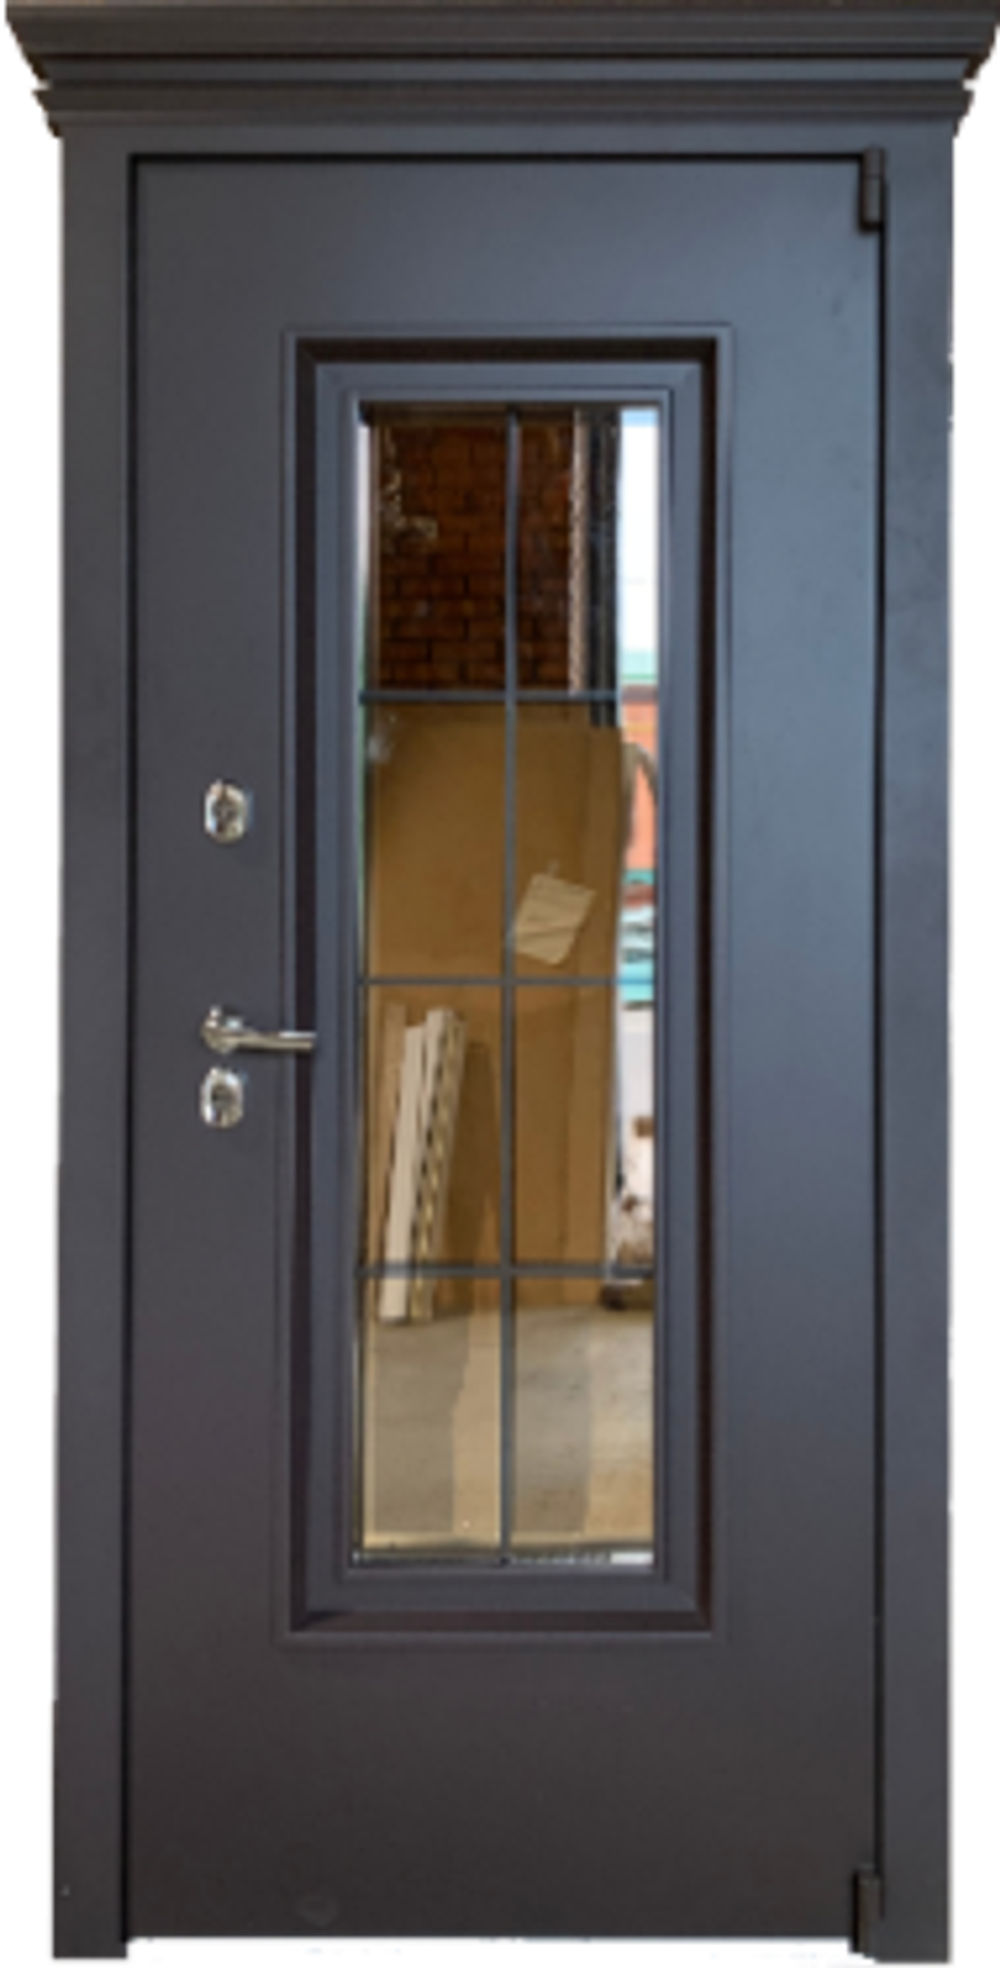 Входная дверь Грань Англия 1 Термо: Размер 2050/860-960, открывание ЛЕВОЕ